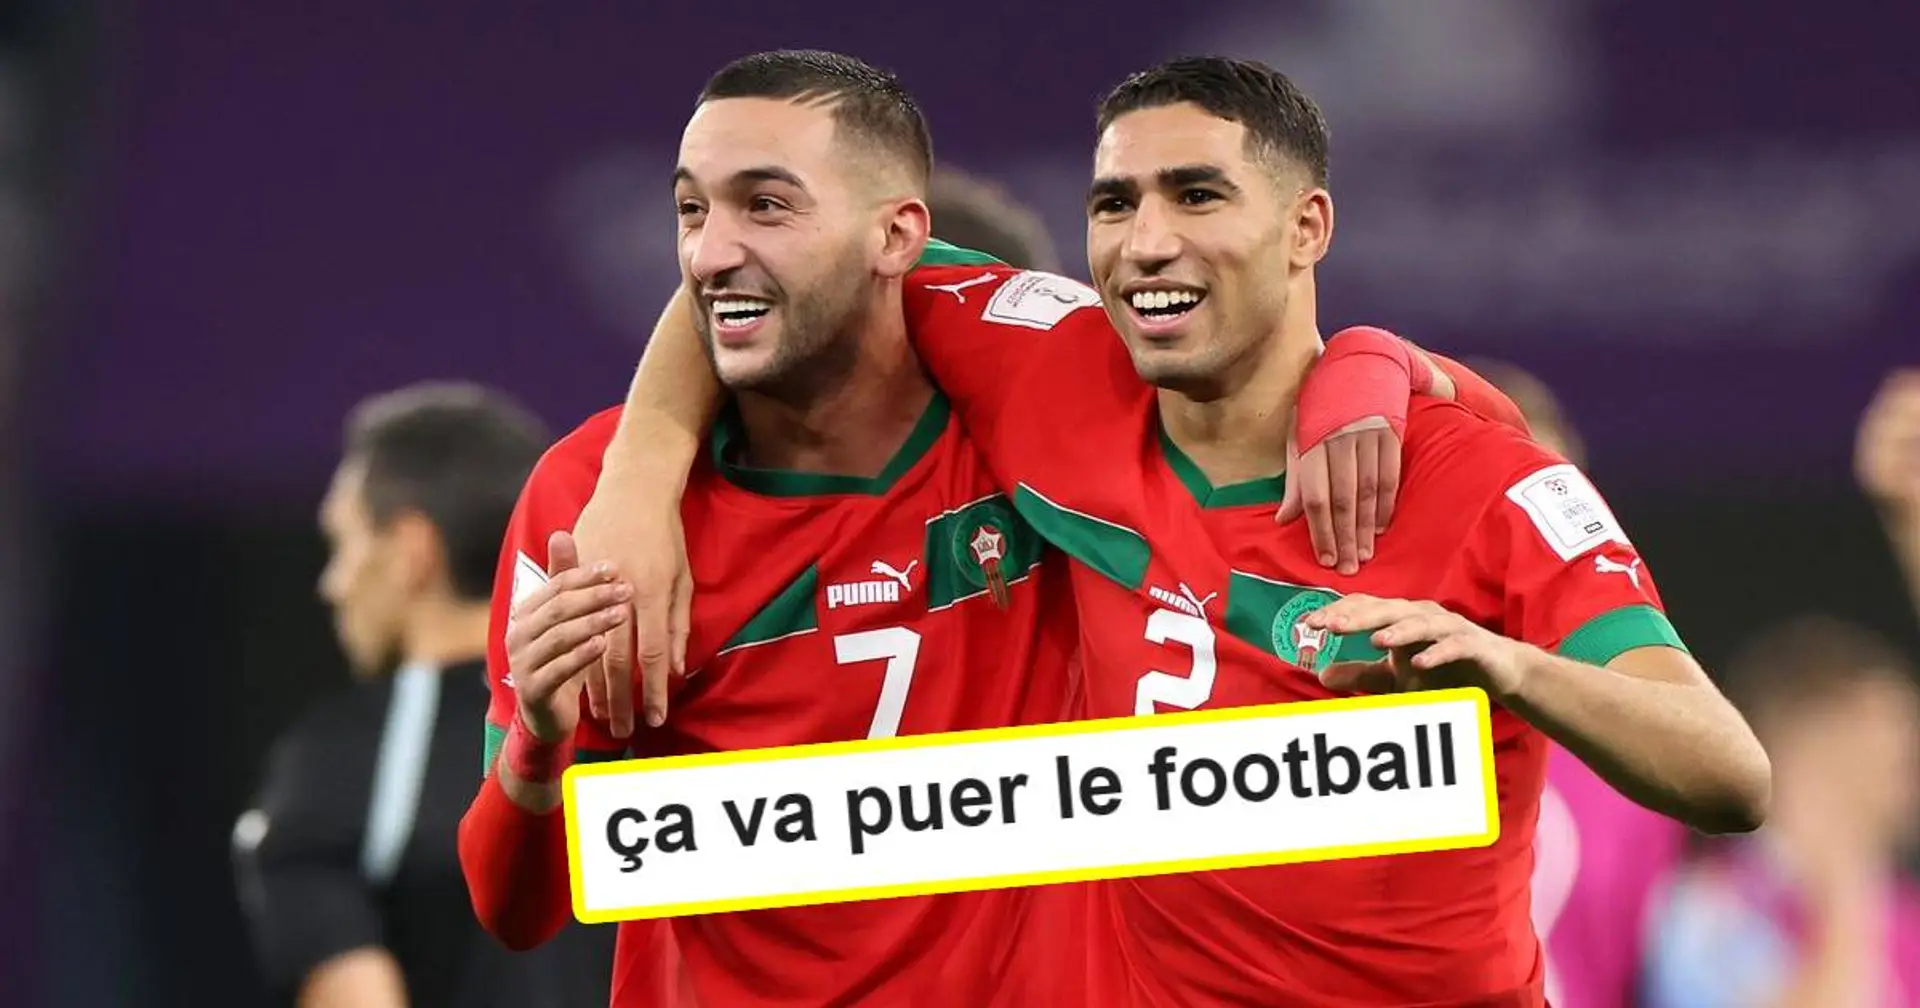 "Le côté droit marocain va faire des ravages" : Les fans du PSG salivent à l'idée de voir le duo Ziyech/Hakimi réuni